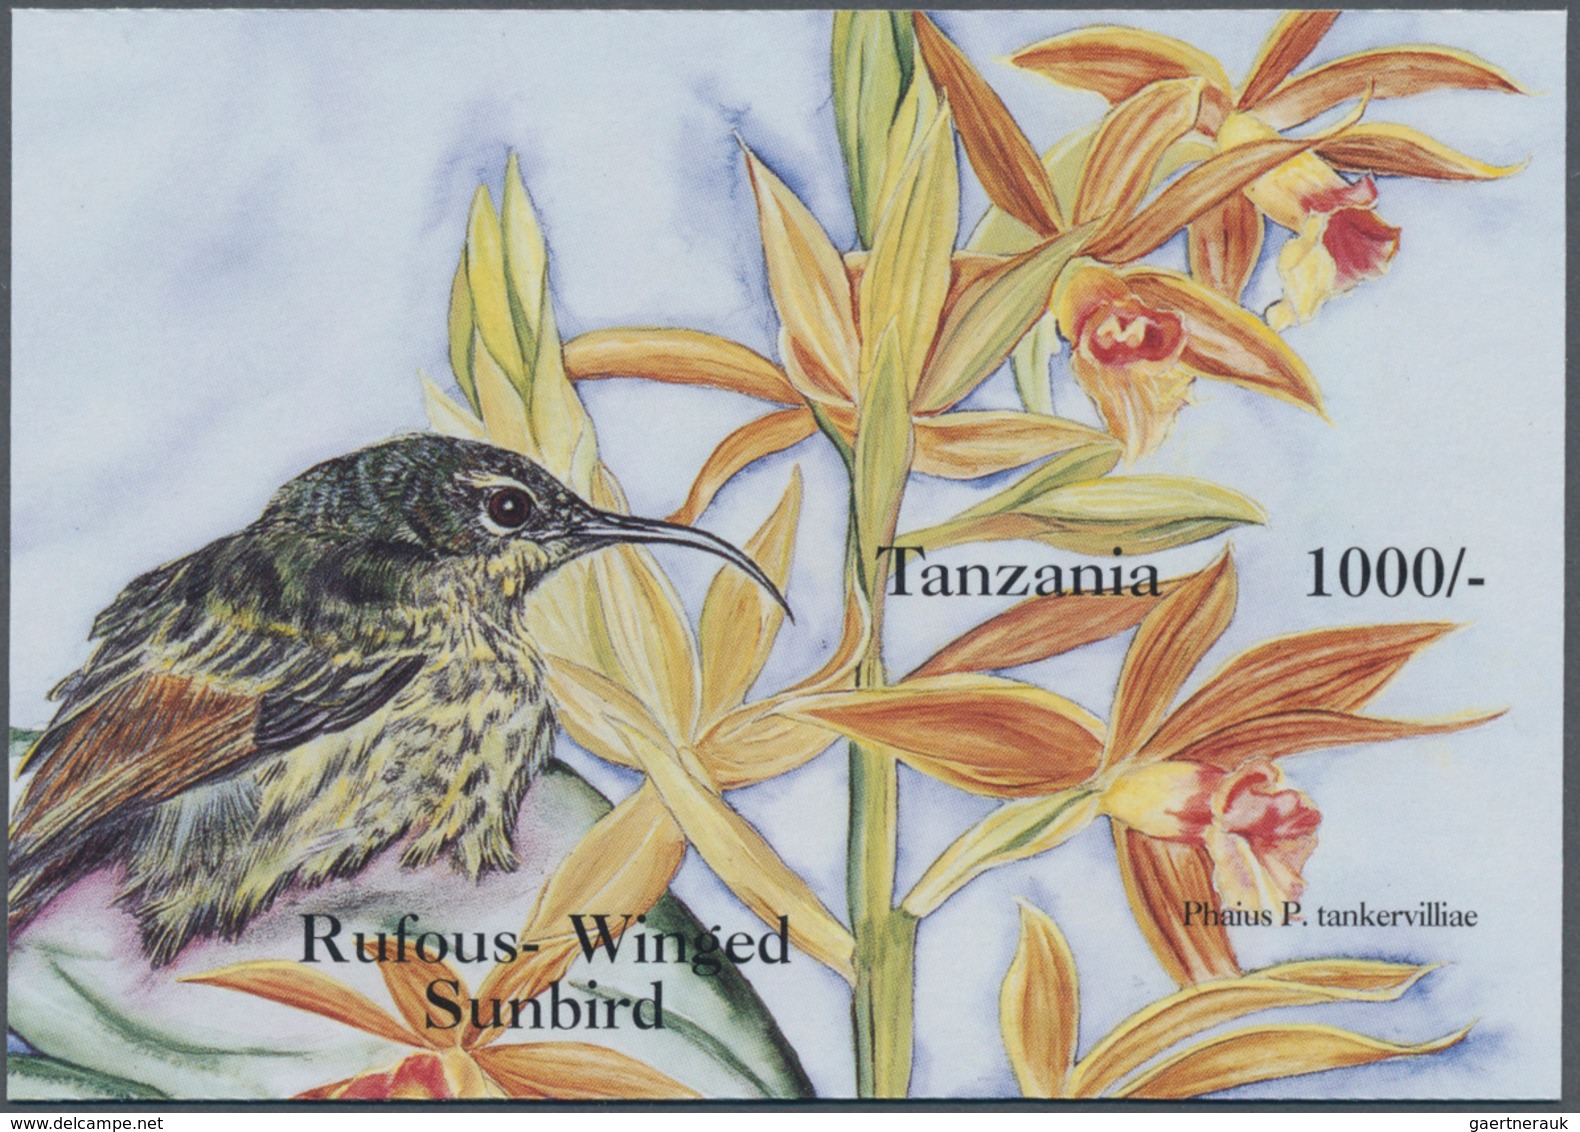 Thematik: Flora-Orchideen / Flora-orchids: 1994, Tanzania. Imperforate Souvenir Sheet (1 Value) From - Orchideen